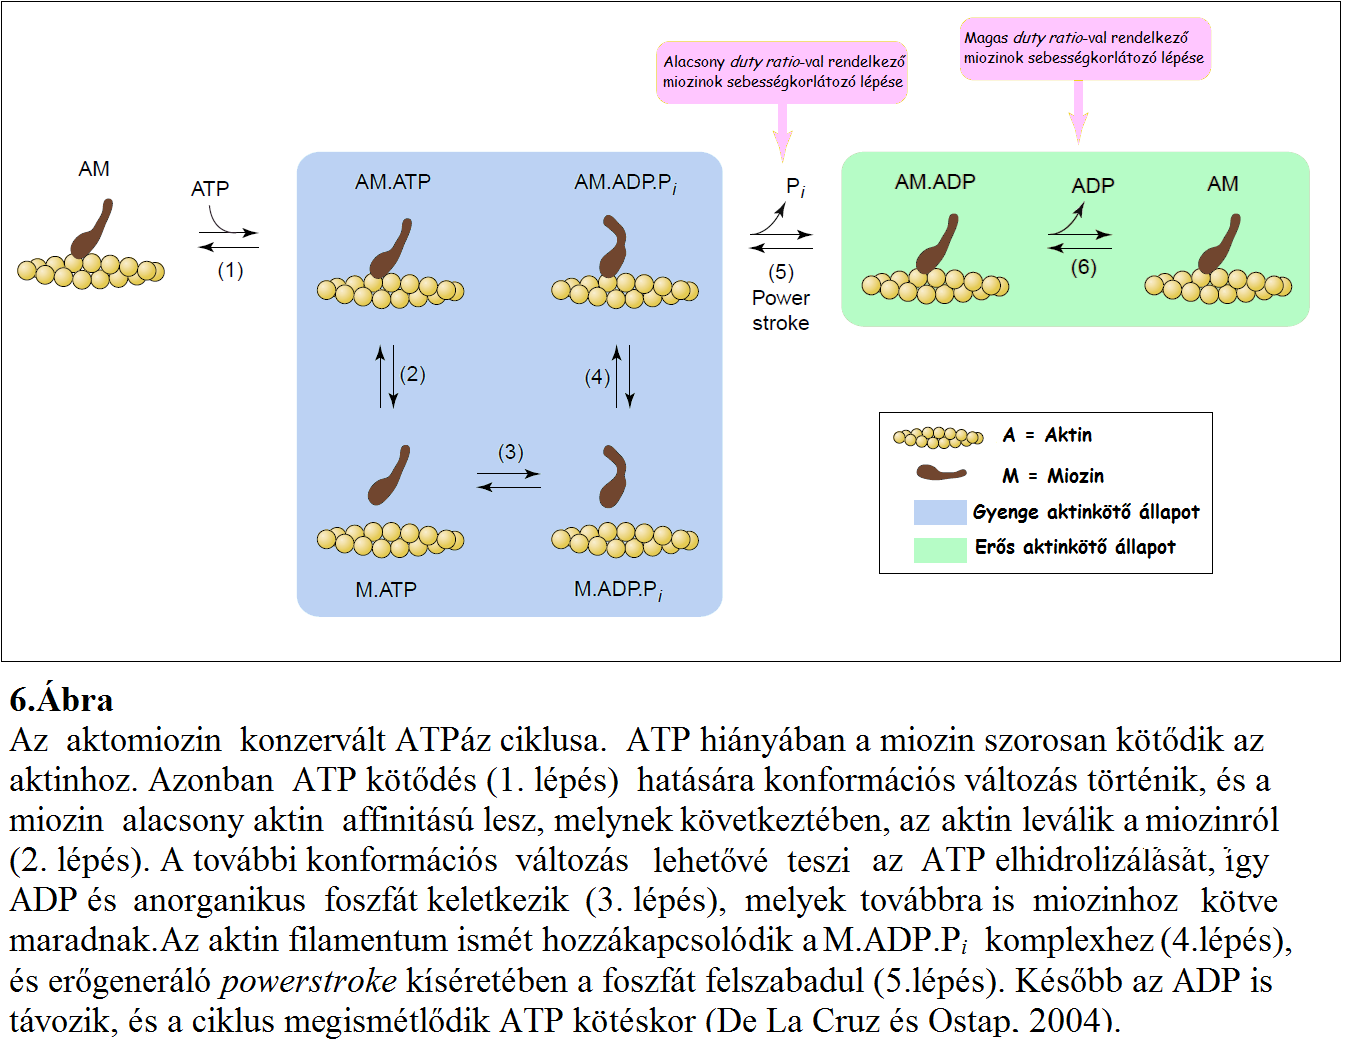 3. Miozin izoformák Az aktin alapú molekuláris motoroknak, a miozin szupercsaládnak legalább 35 tagja van (Sweeney és Houdusse, 2010), melyek a változatos sejtszintű tevékenységekhez adaptálódtak.